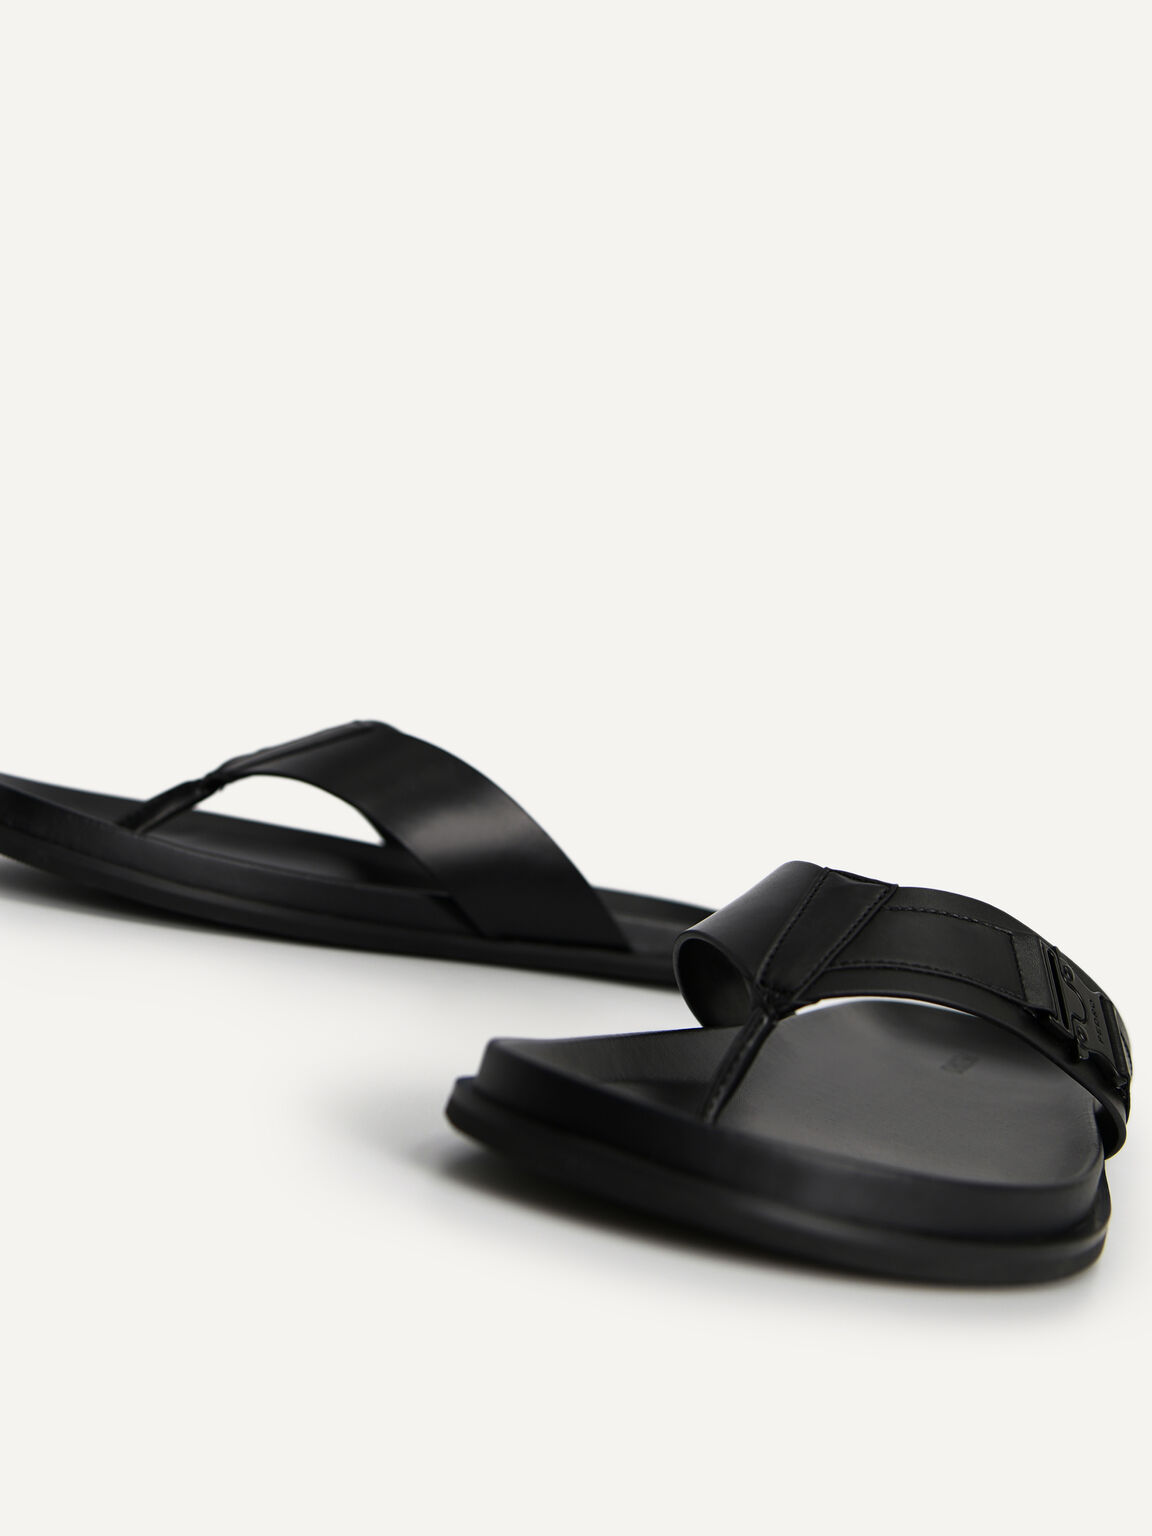 Thong Sandals, Black, hi-res